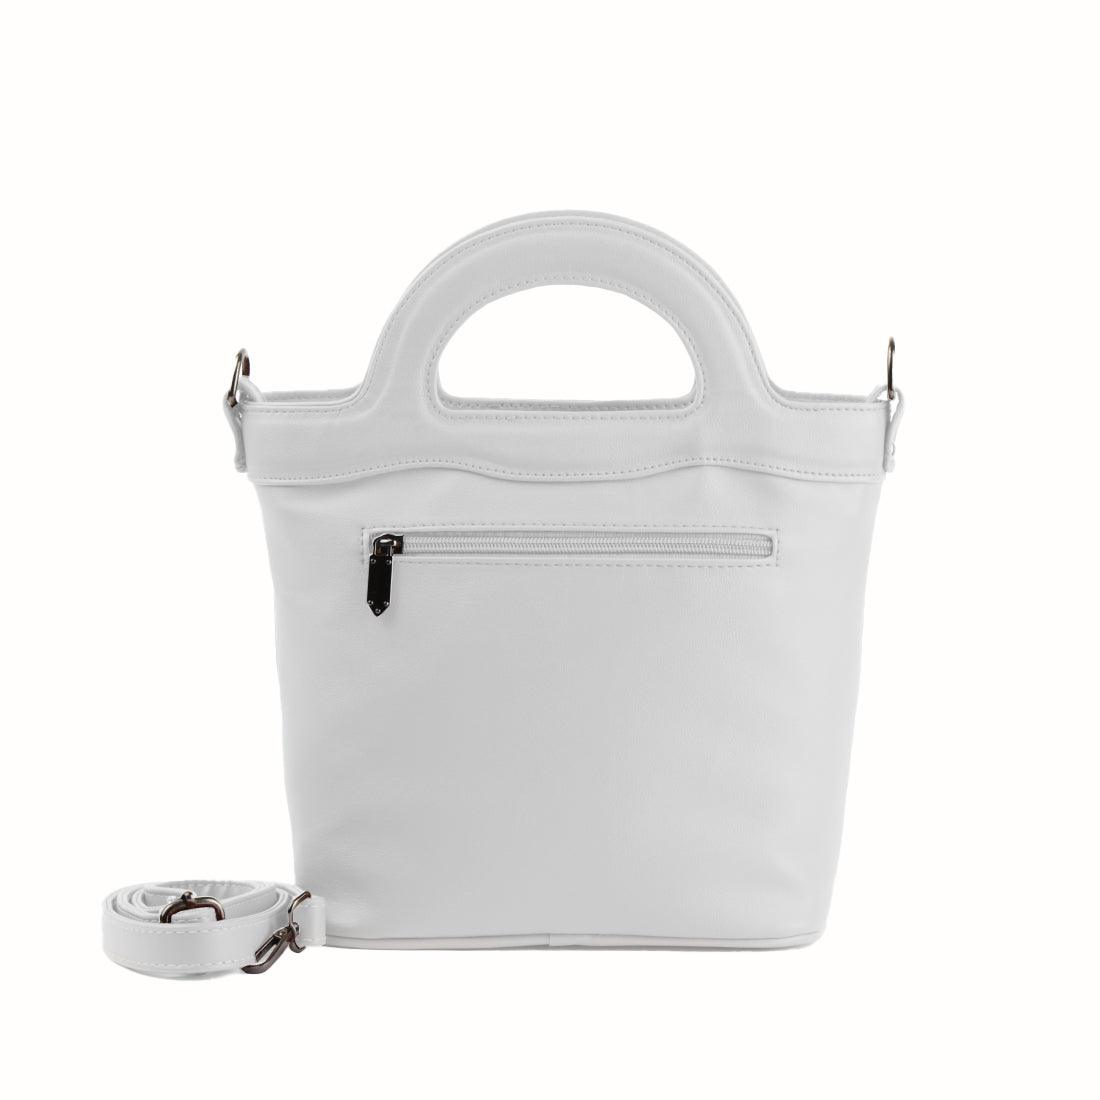 White Top Handle Handbag Cute Pets - CANVAEGYPT